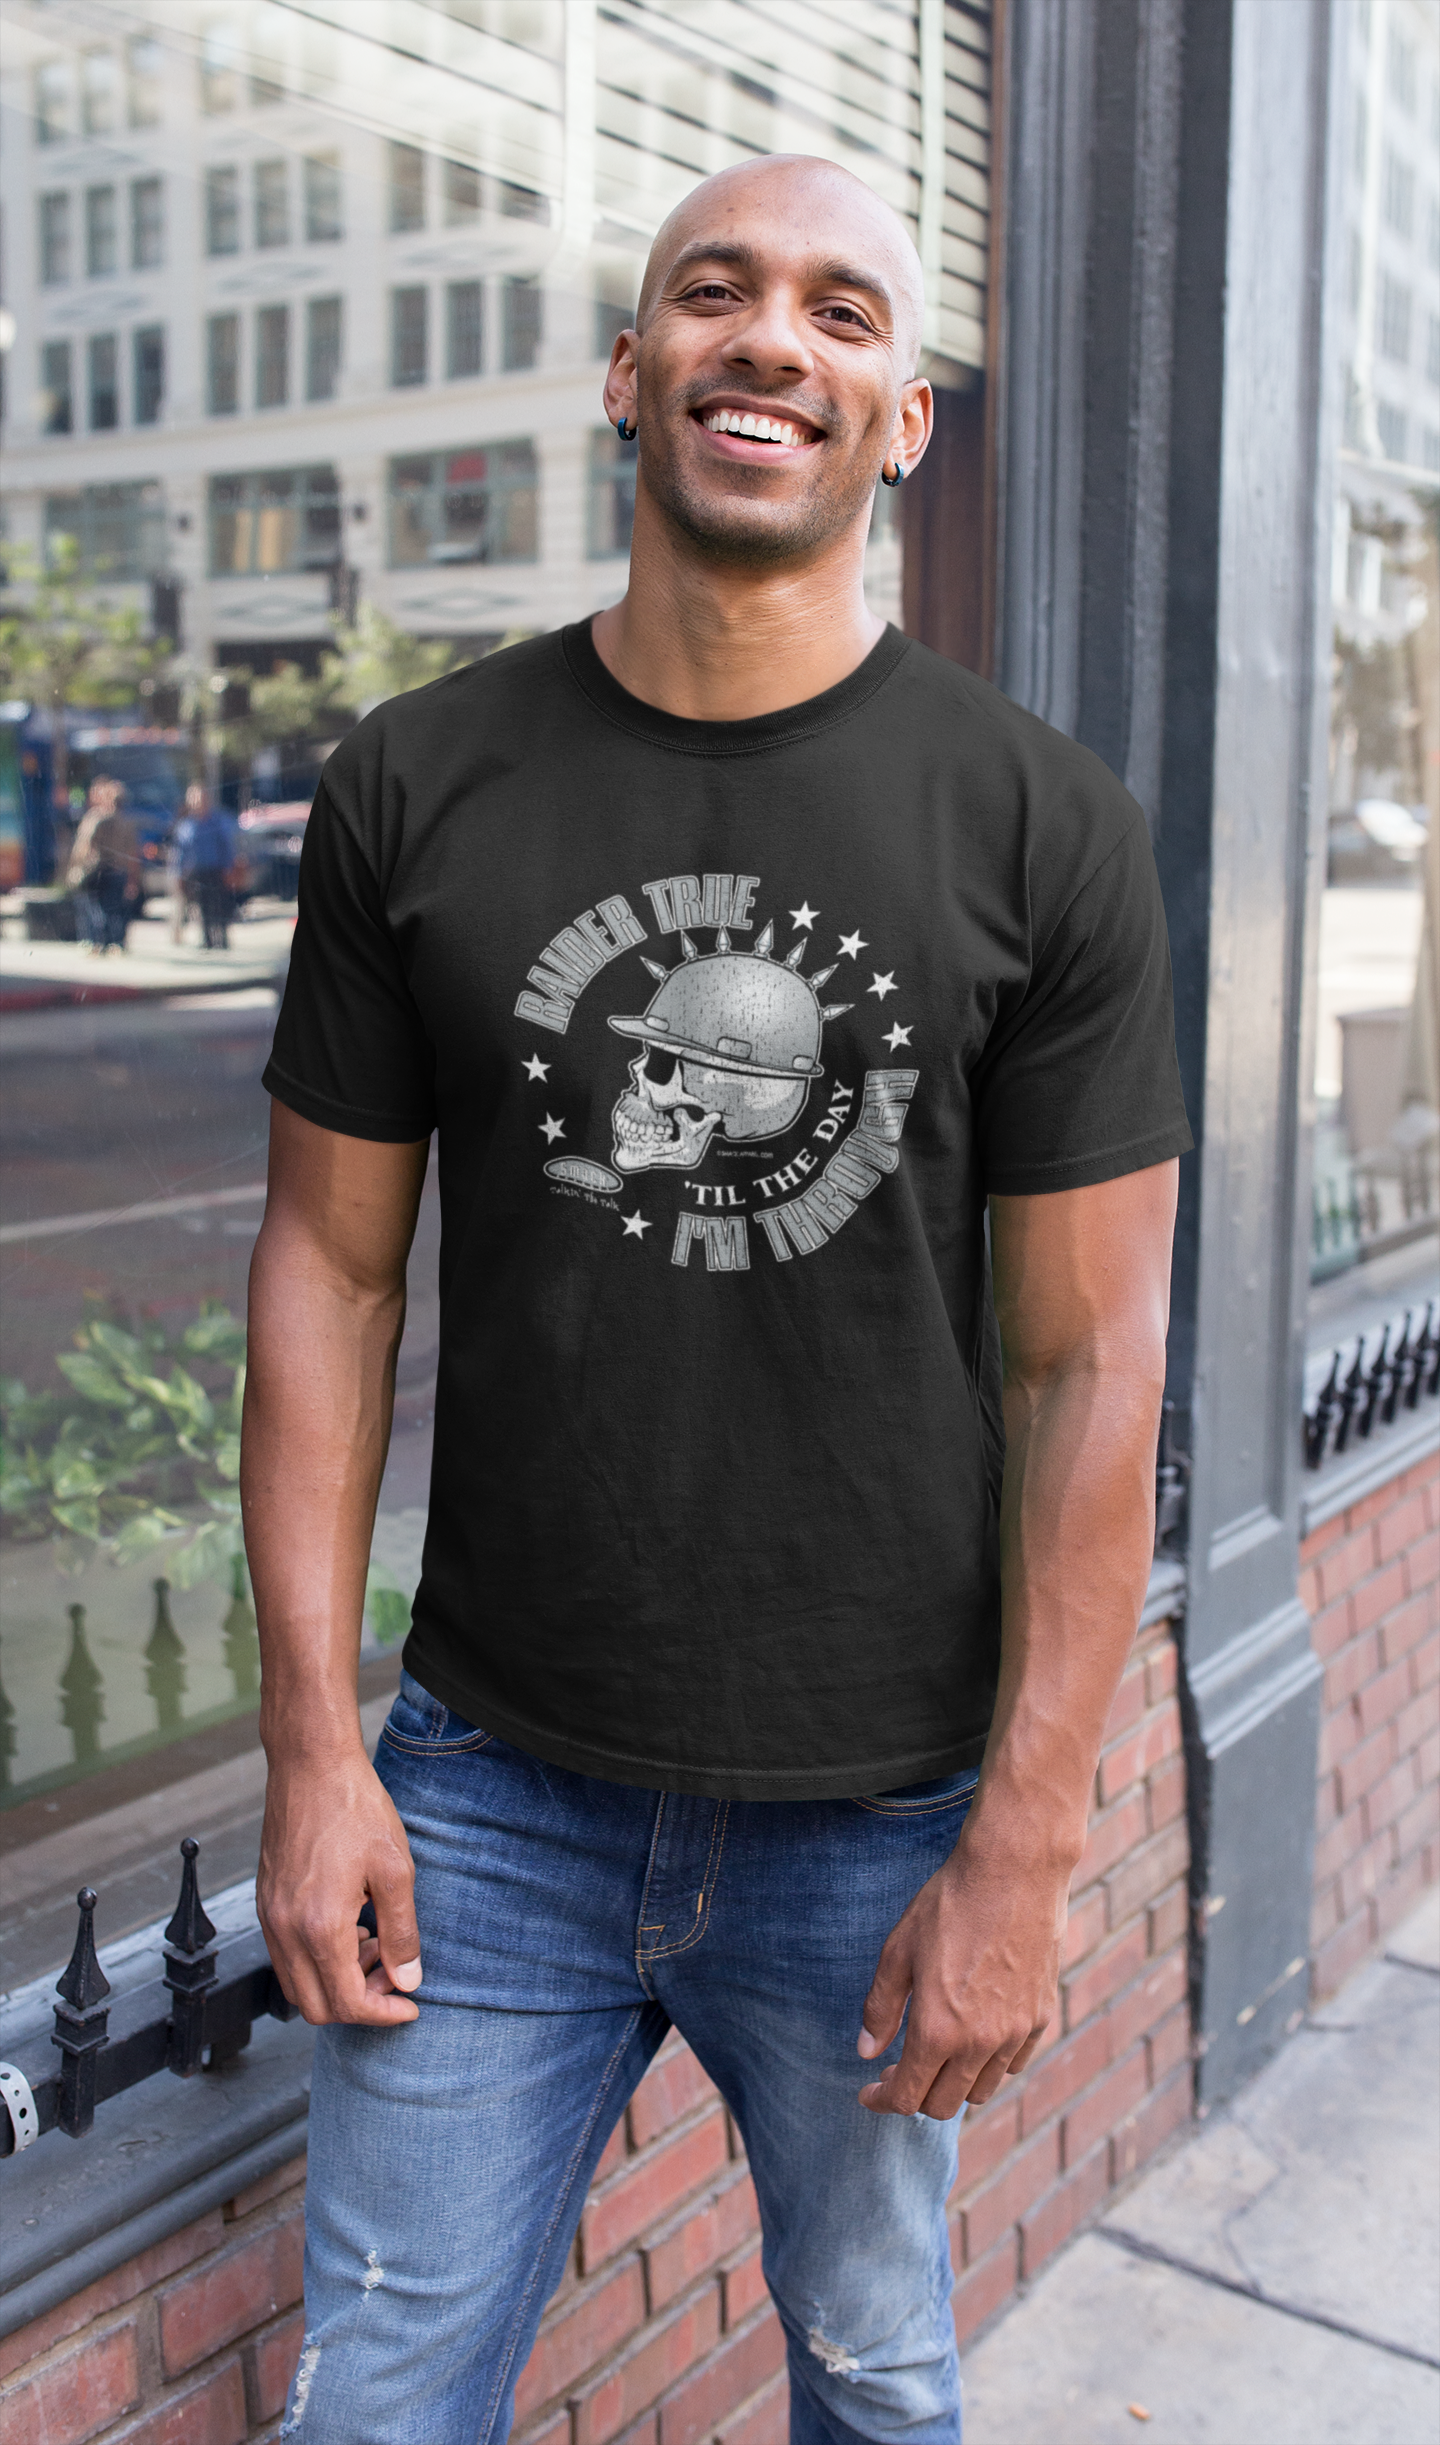 lv raiders shirts for men